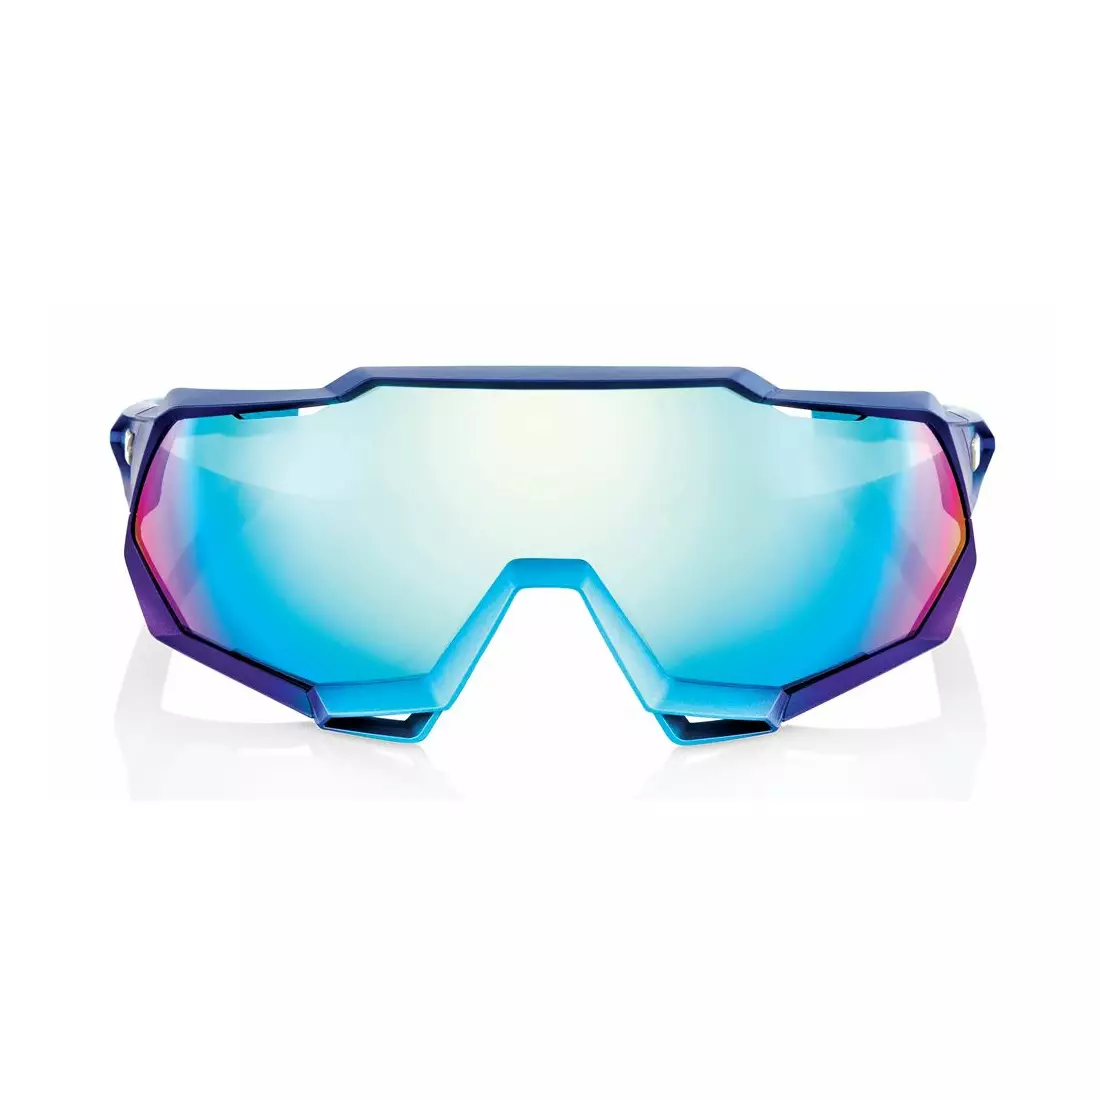 100% Sportbrille SPEEDTRAP (Blue Topaz Multilayer Mirror Lens) blue STO-61023-228-01